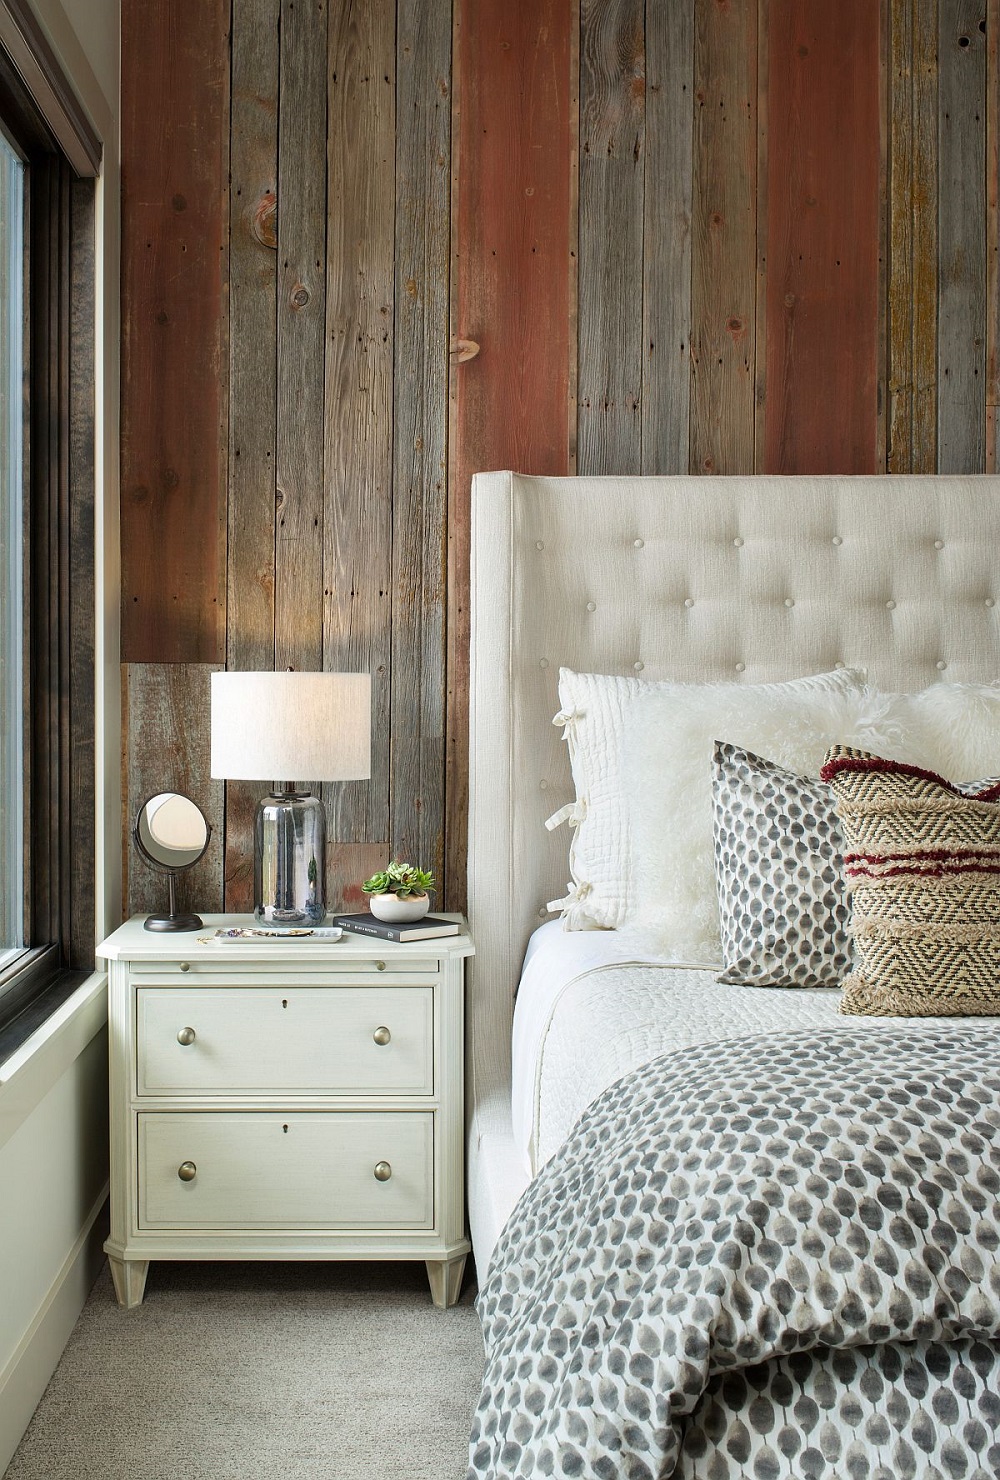 Bức tường bằng gỗ tạo nên sự giản dị, mộc mạc cho không gian phòng ngủ